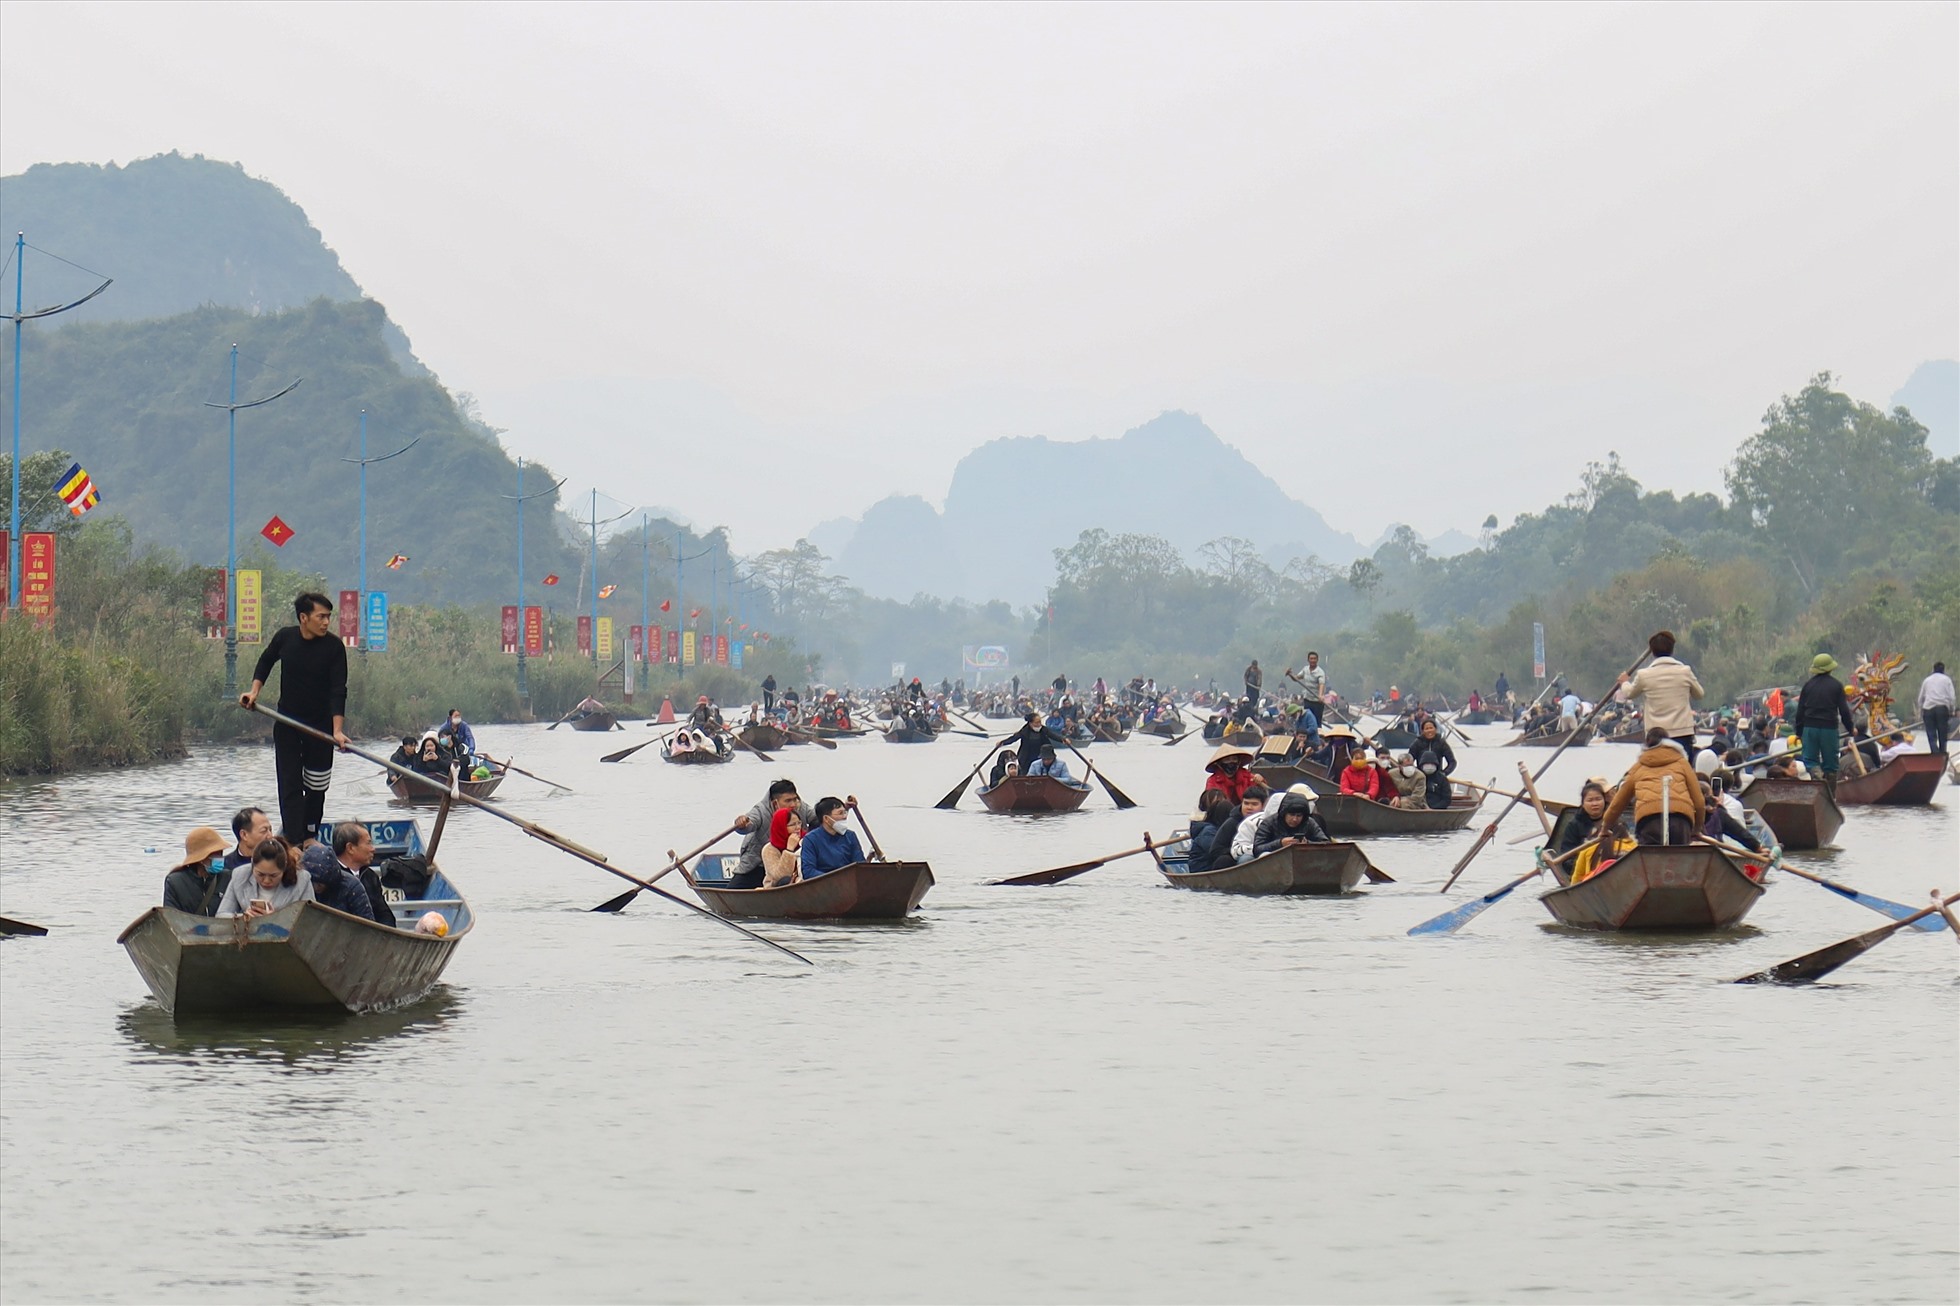 Theo Ban quản lý Khu Di tích thắng cảnh Hương Sơn từ ngày mùng 3 đến mùng 5 Tết, chùa Hương đã đón khoảng 102.000 lượt khách và chỉ riêng ngày mùng 5 Tết đã đón tới 47.000 lượt khách tới tham quan lễ chùa.